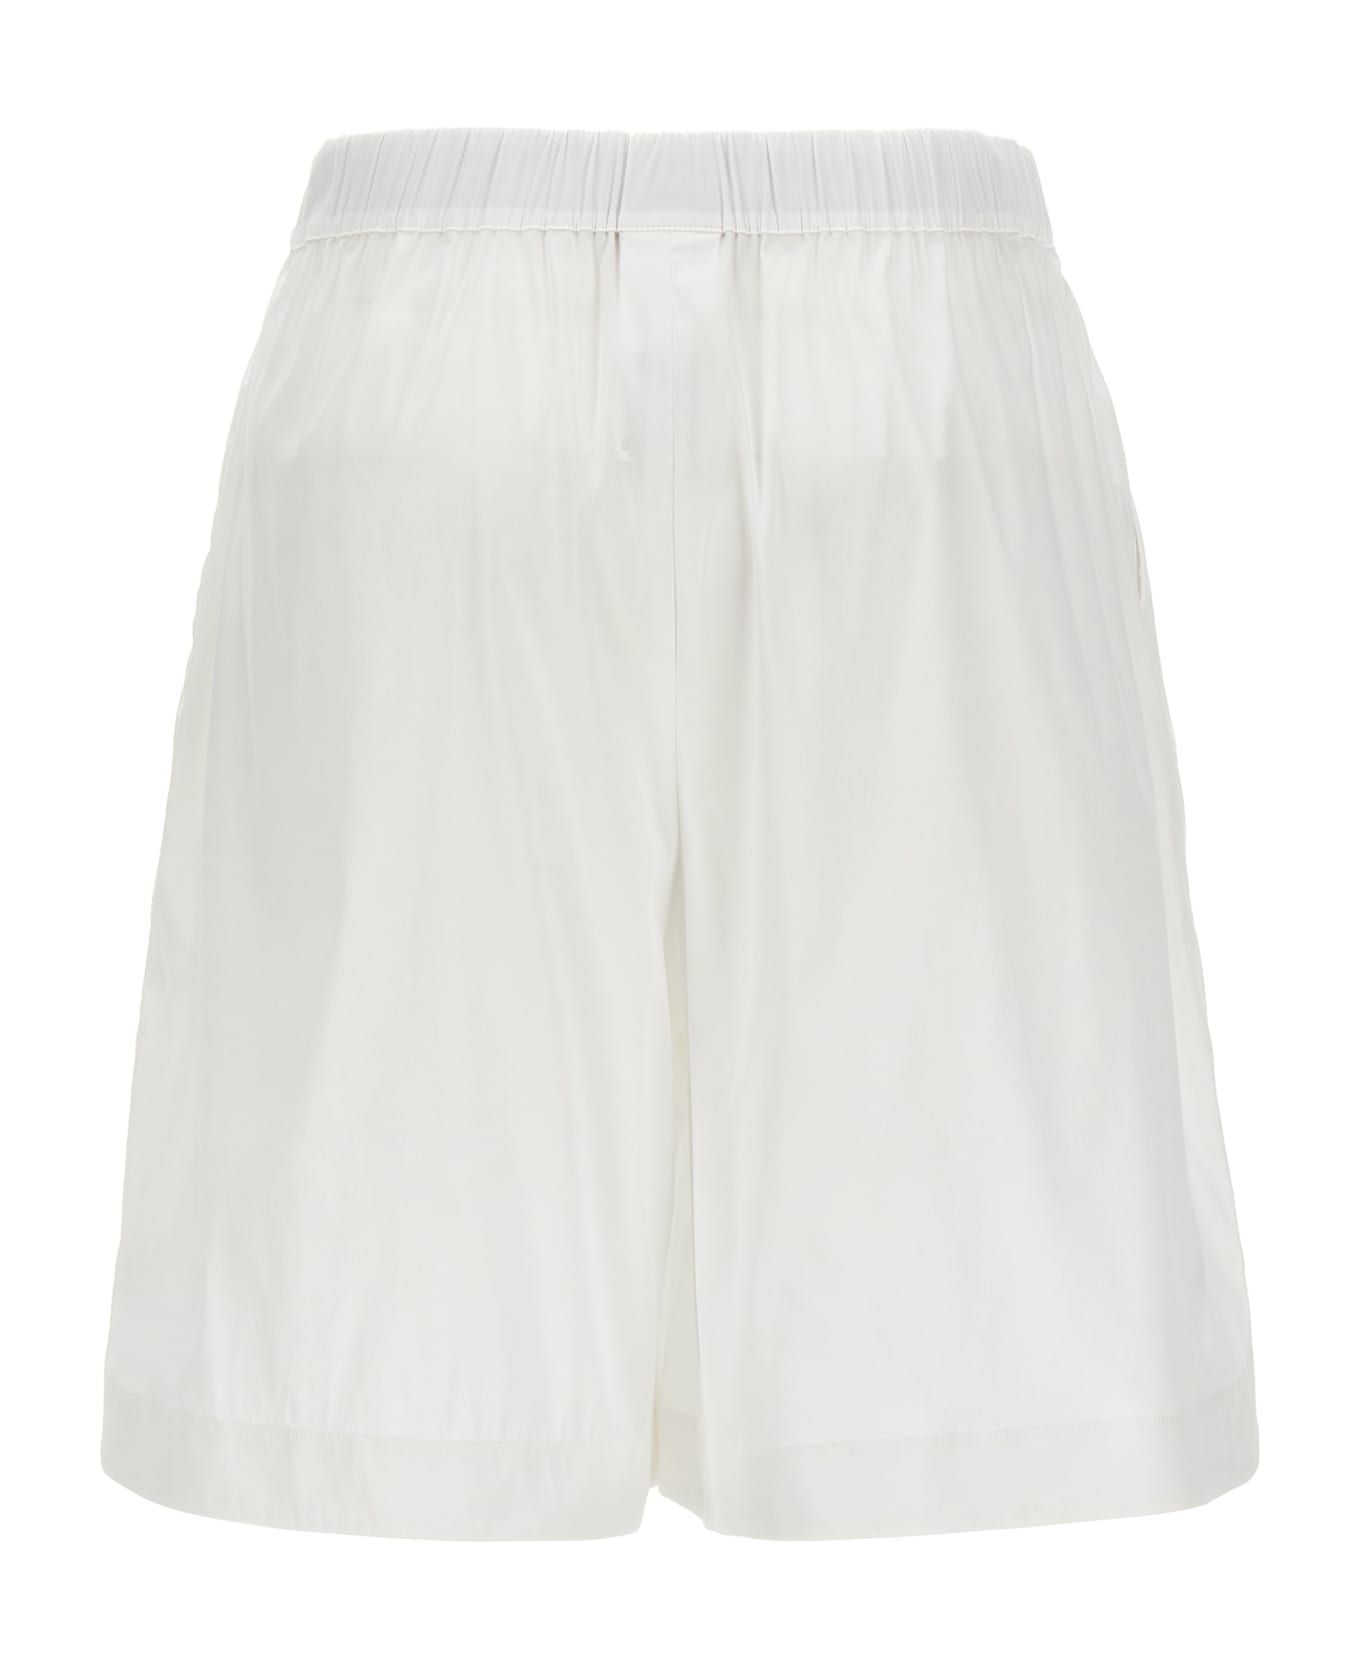 Max Mara 'oliveto' Bermuda Shorts - White ショートパンツ